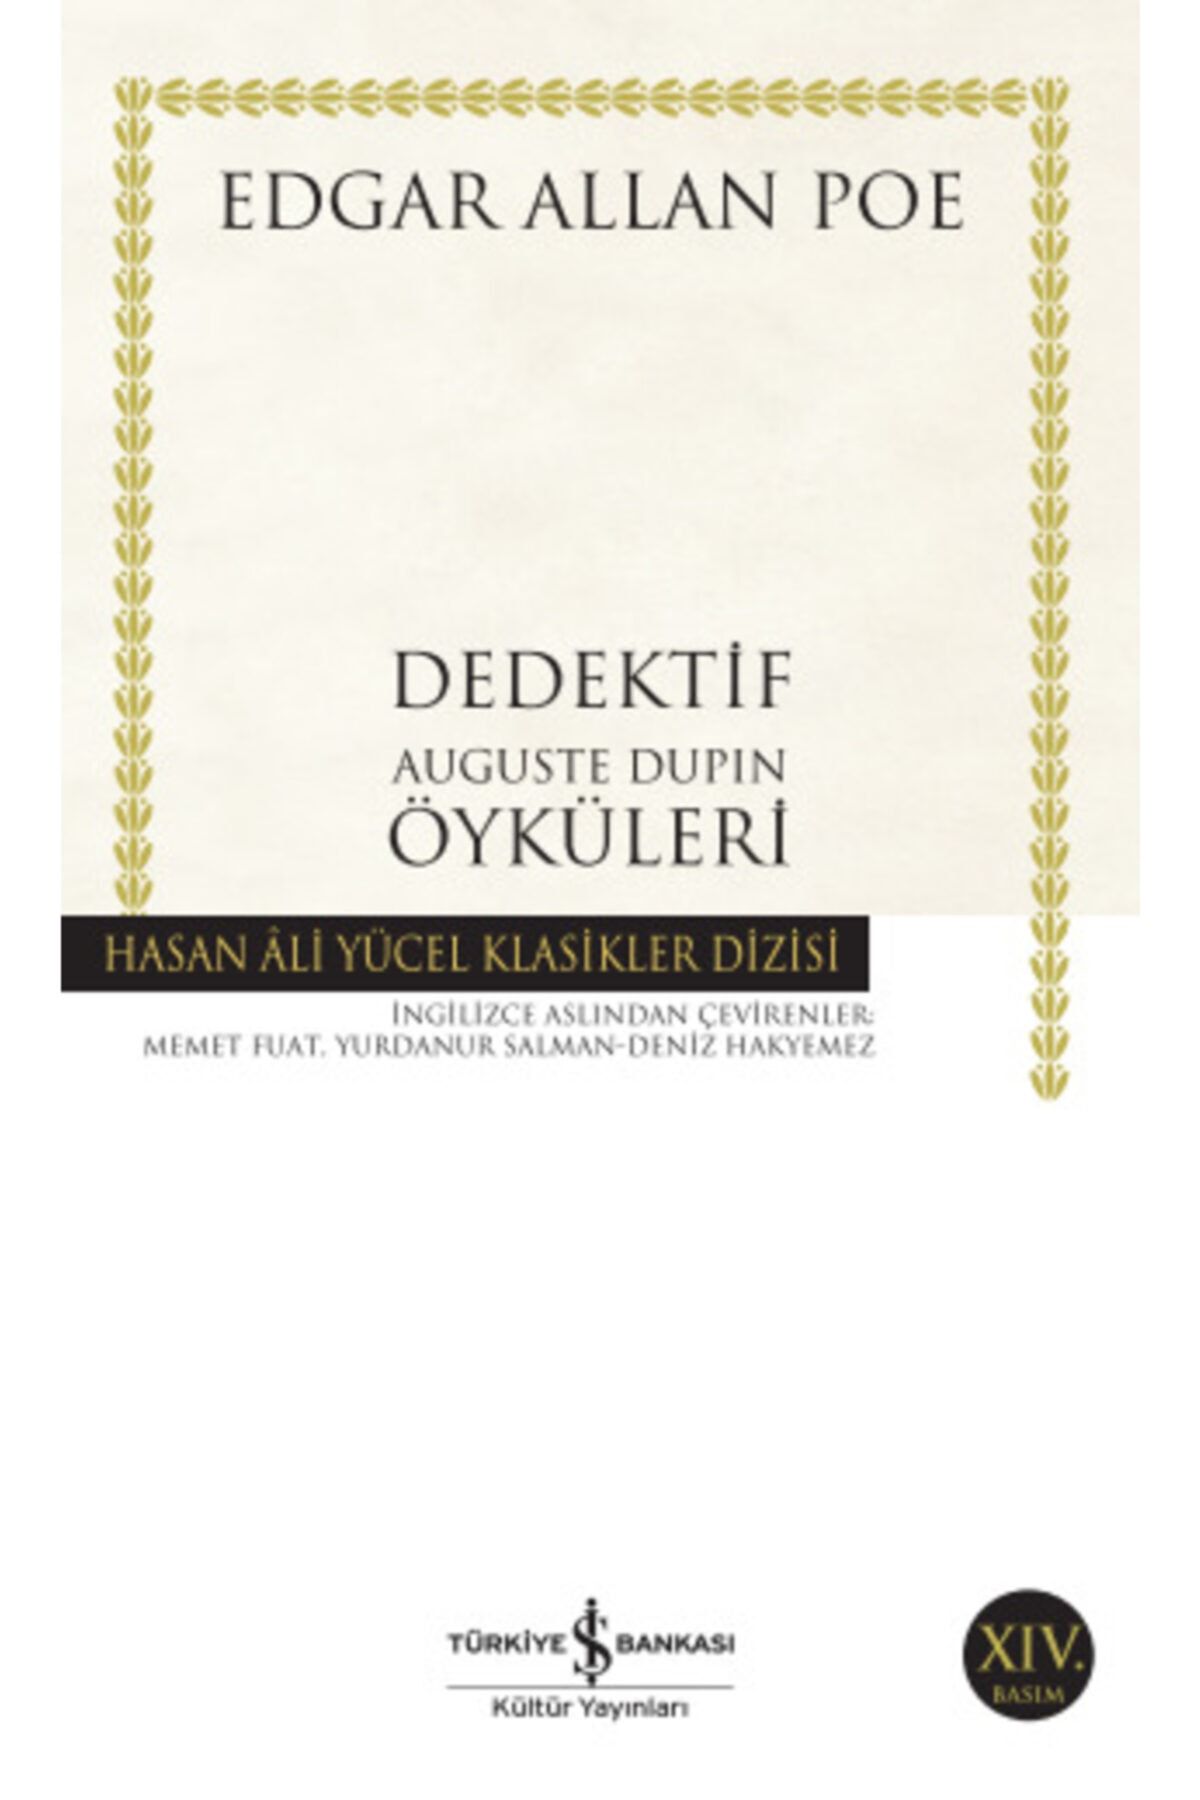 Türkiye İş Bankası Kültür Yayınları Iş Bankası - Dedektif Auguste Dupin Öyküleri / Edgar Allan Poe